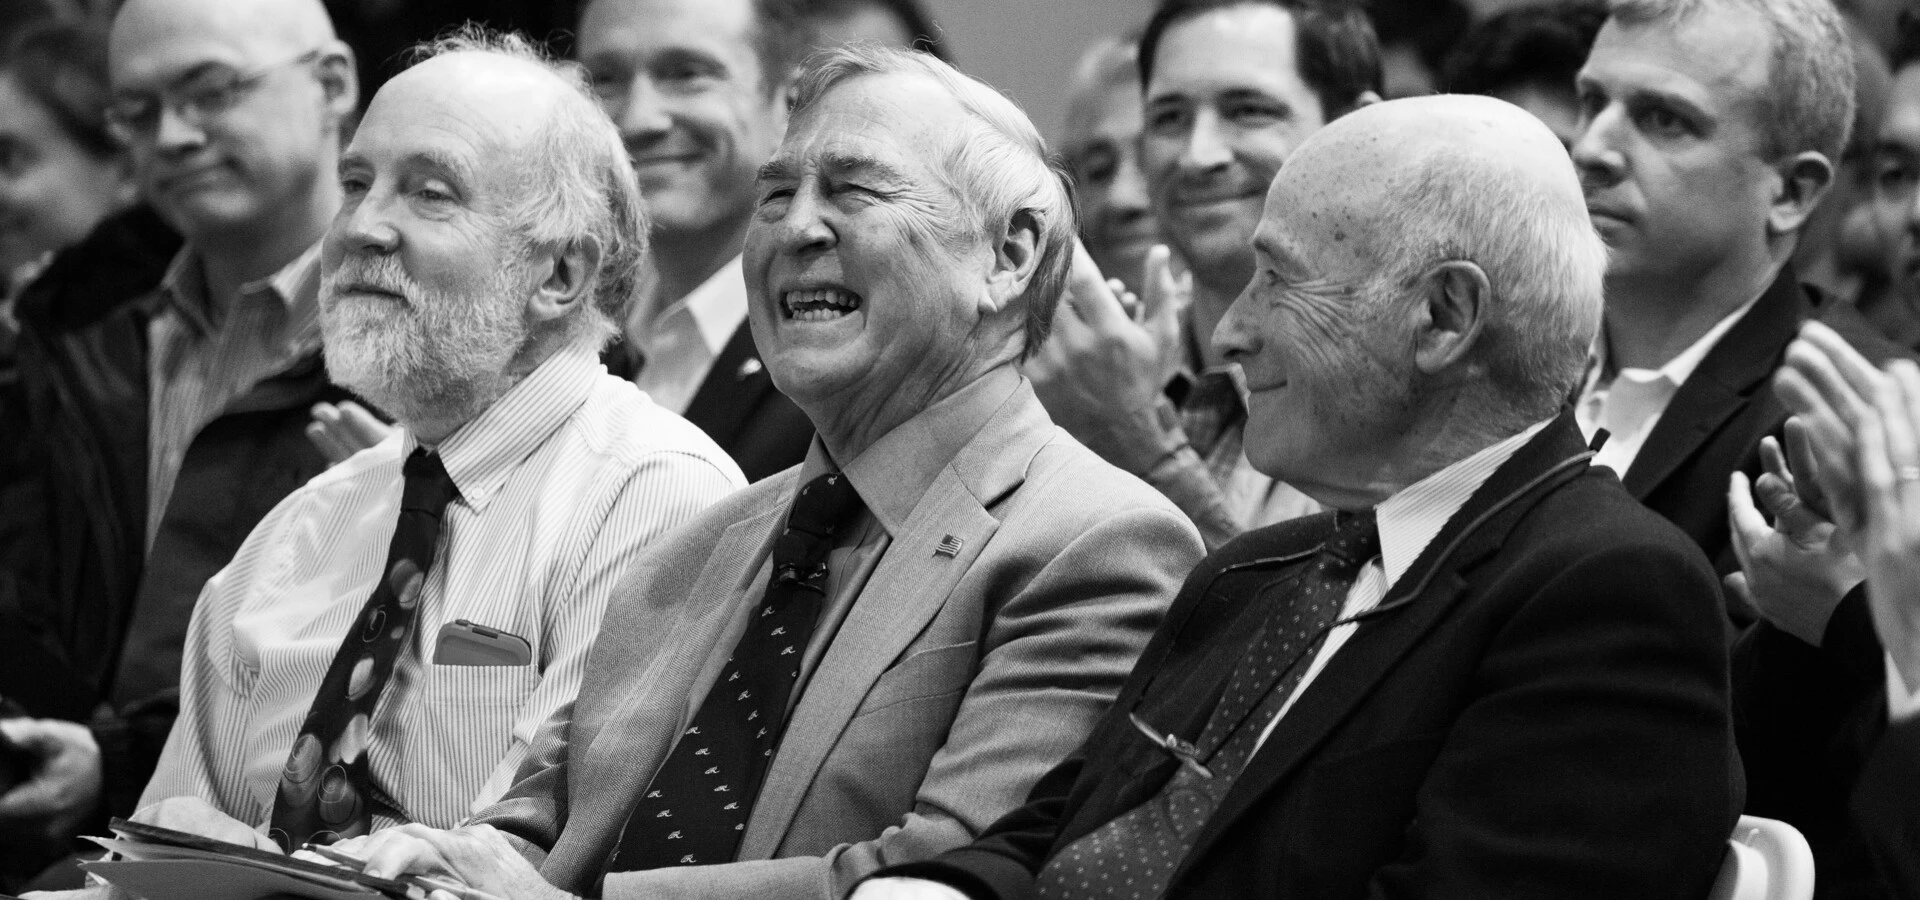 Three men laughing